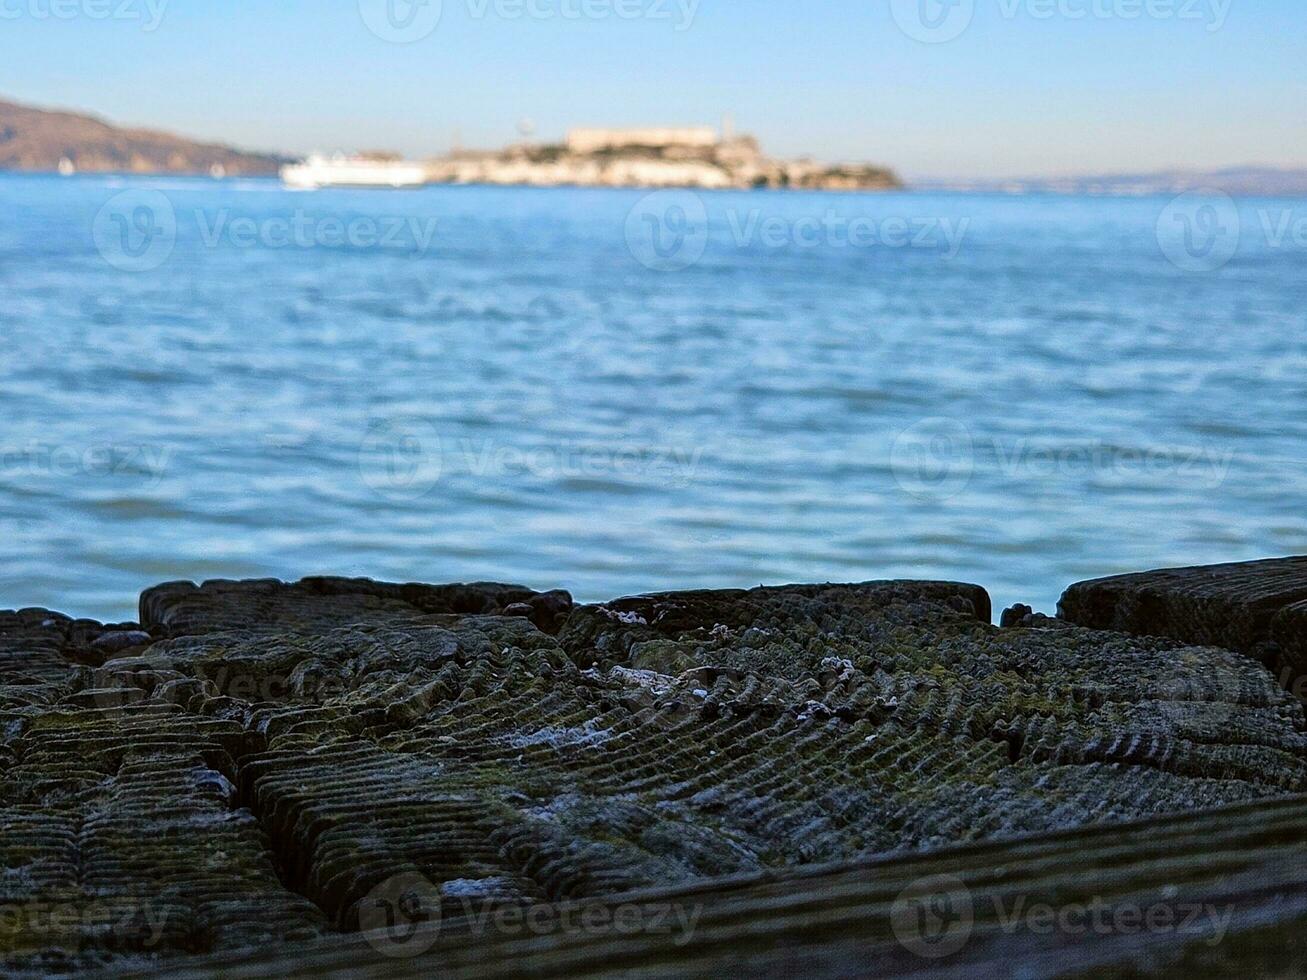 visie van alcatraz eiland van fort metselaar haven in san francisco Californië foto